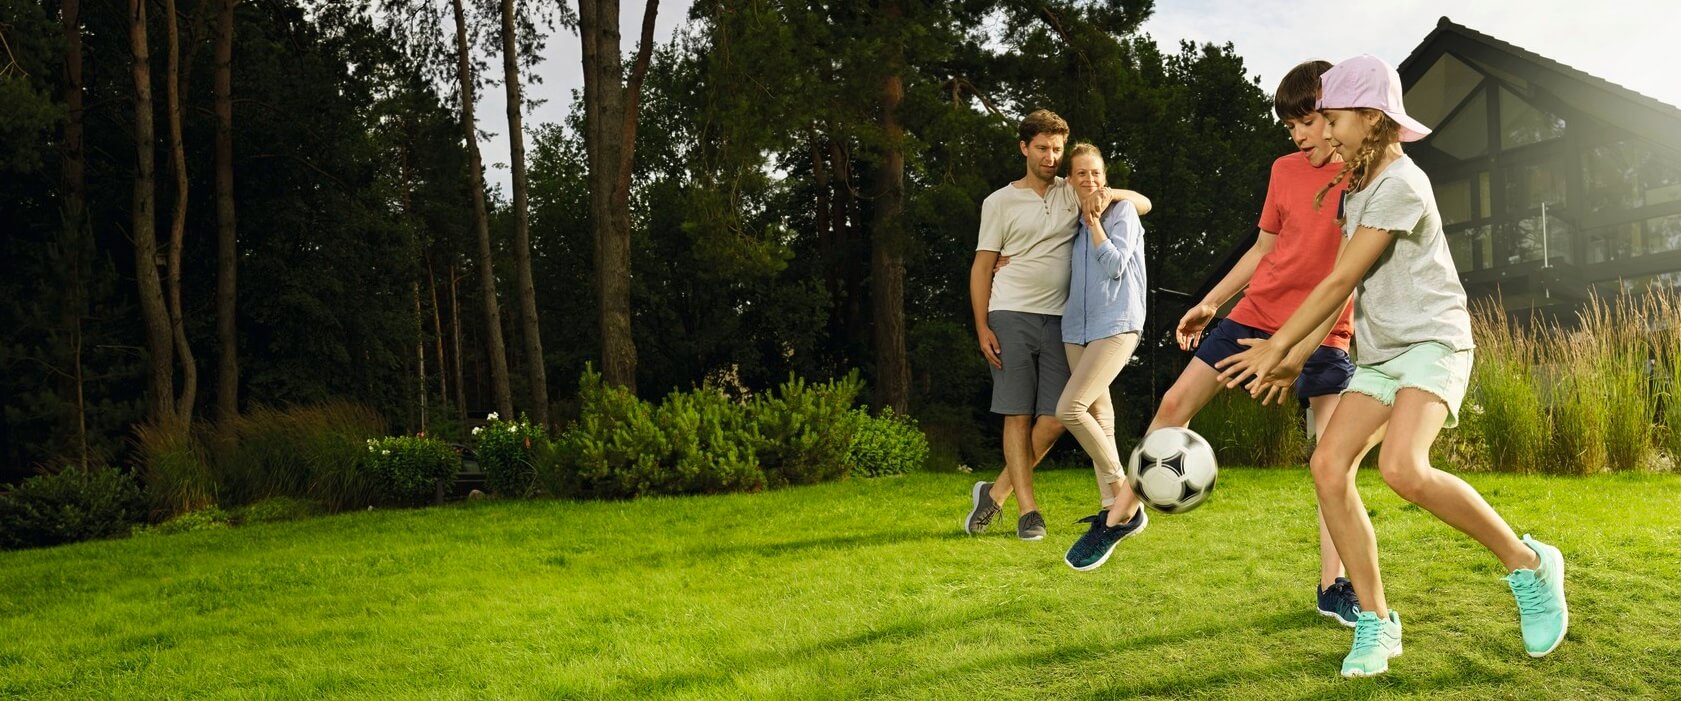 Privathaf tpflichtversicherung: Eine vierköpfige Familie im Garten Tochter und Sohn spielen Fußball. Vater und Mutter schauen im Hintergrund zu.